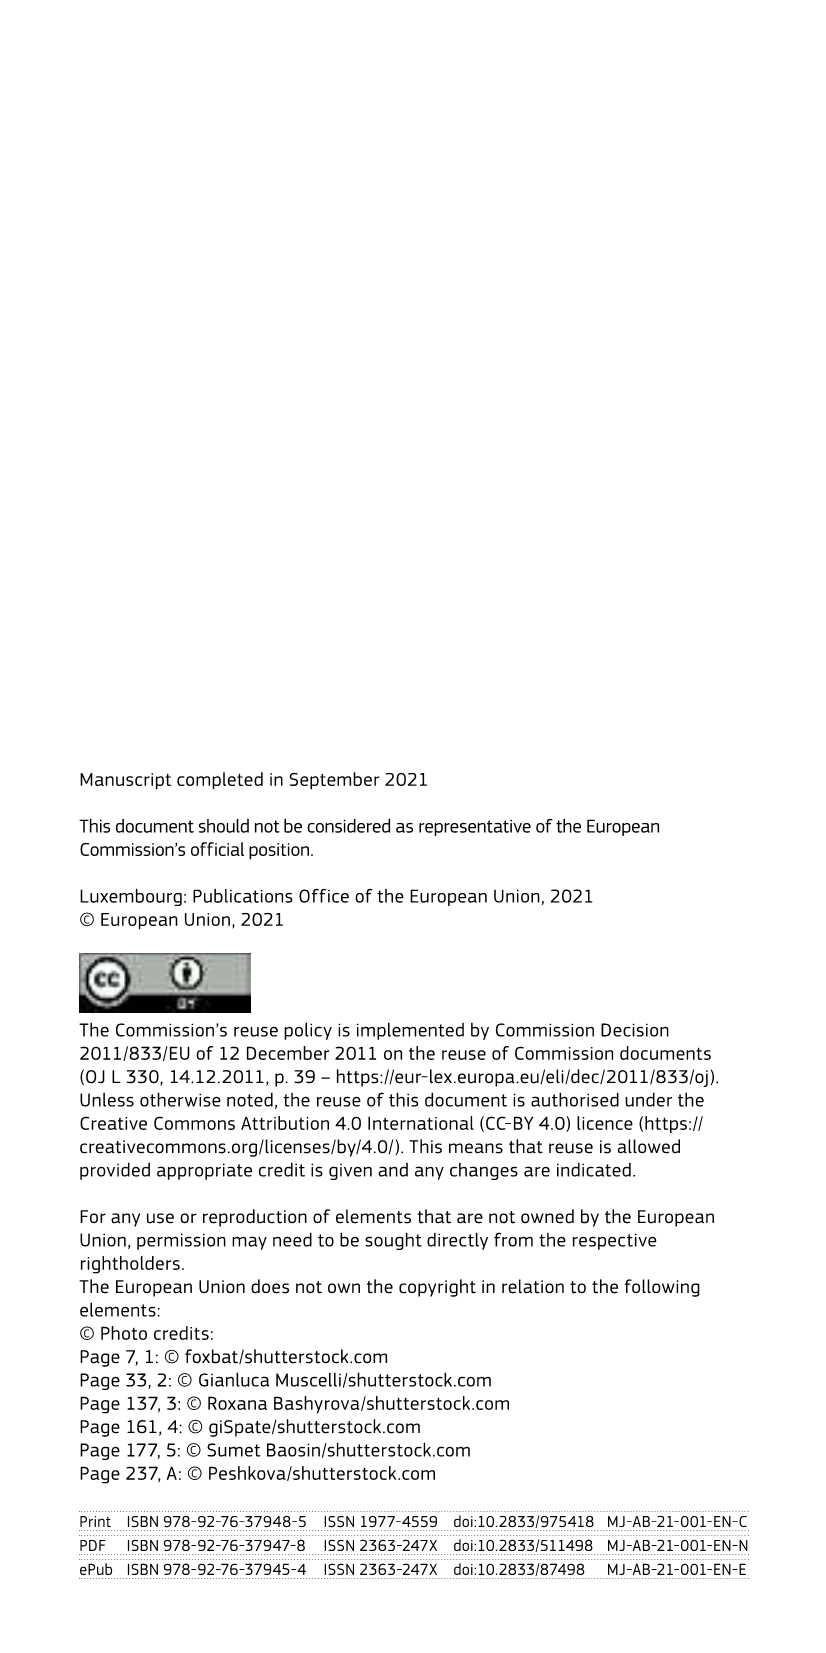 欧盟能源图册—数据袖珍书2021-2021.11-269页